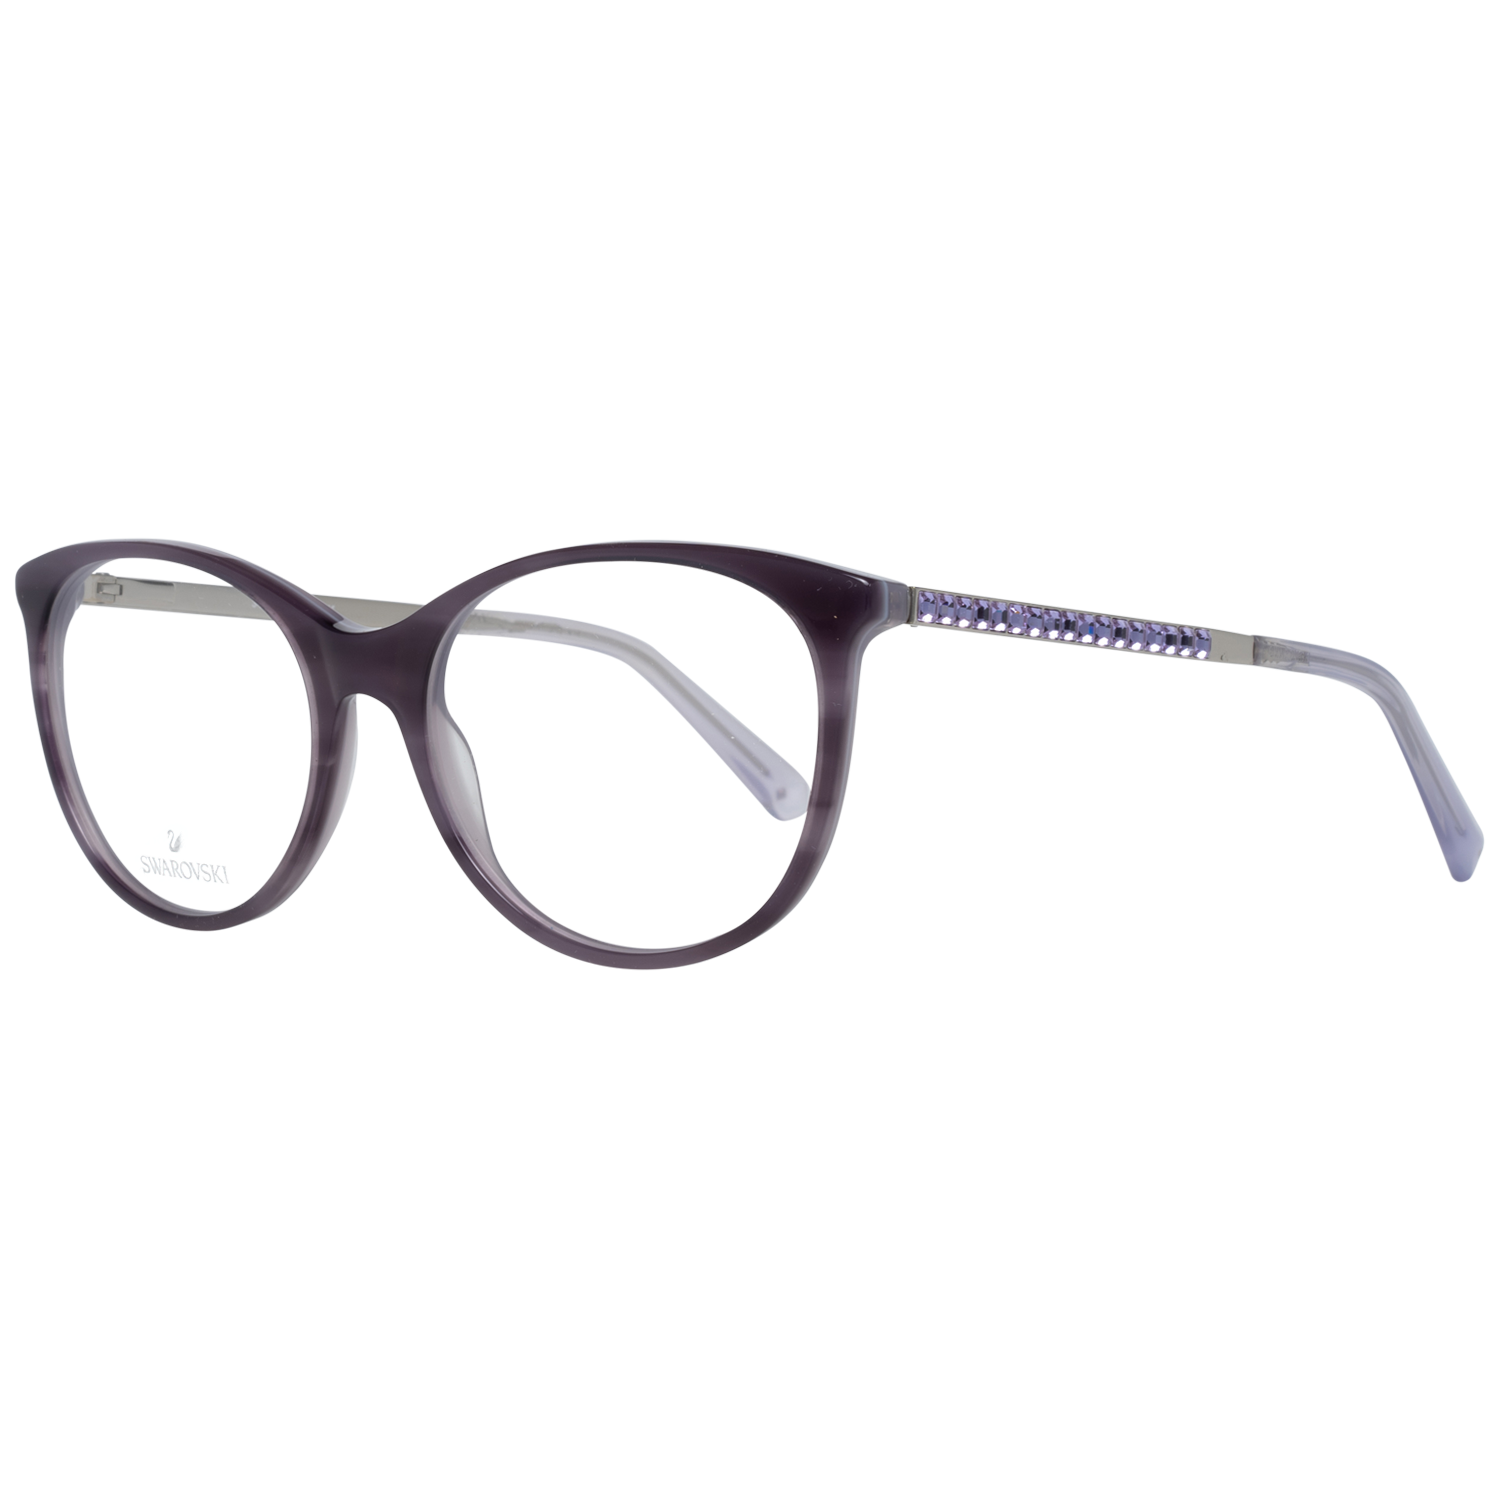 Swarovski Frames Swarovski Women Glasses Optical Frame SK5297 080 52 Eyeglasses Eyewear UK USA Australia 